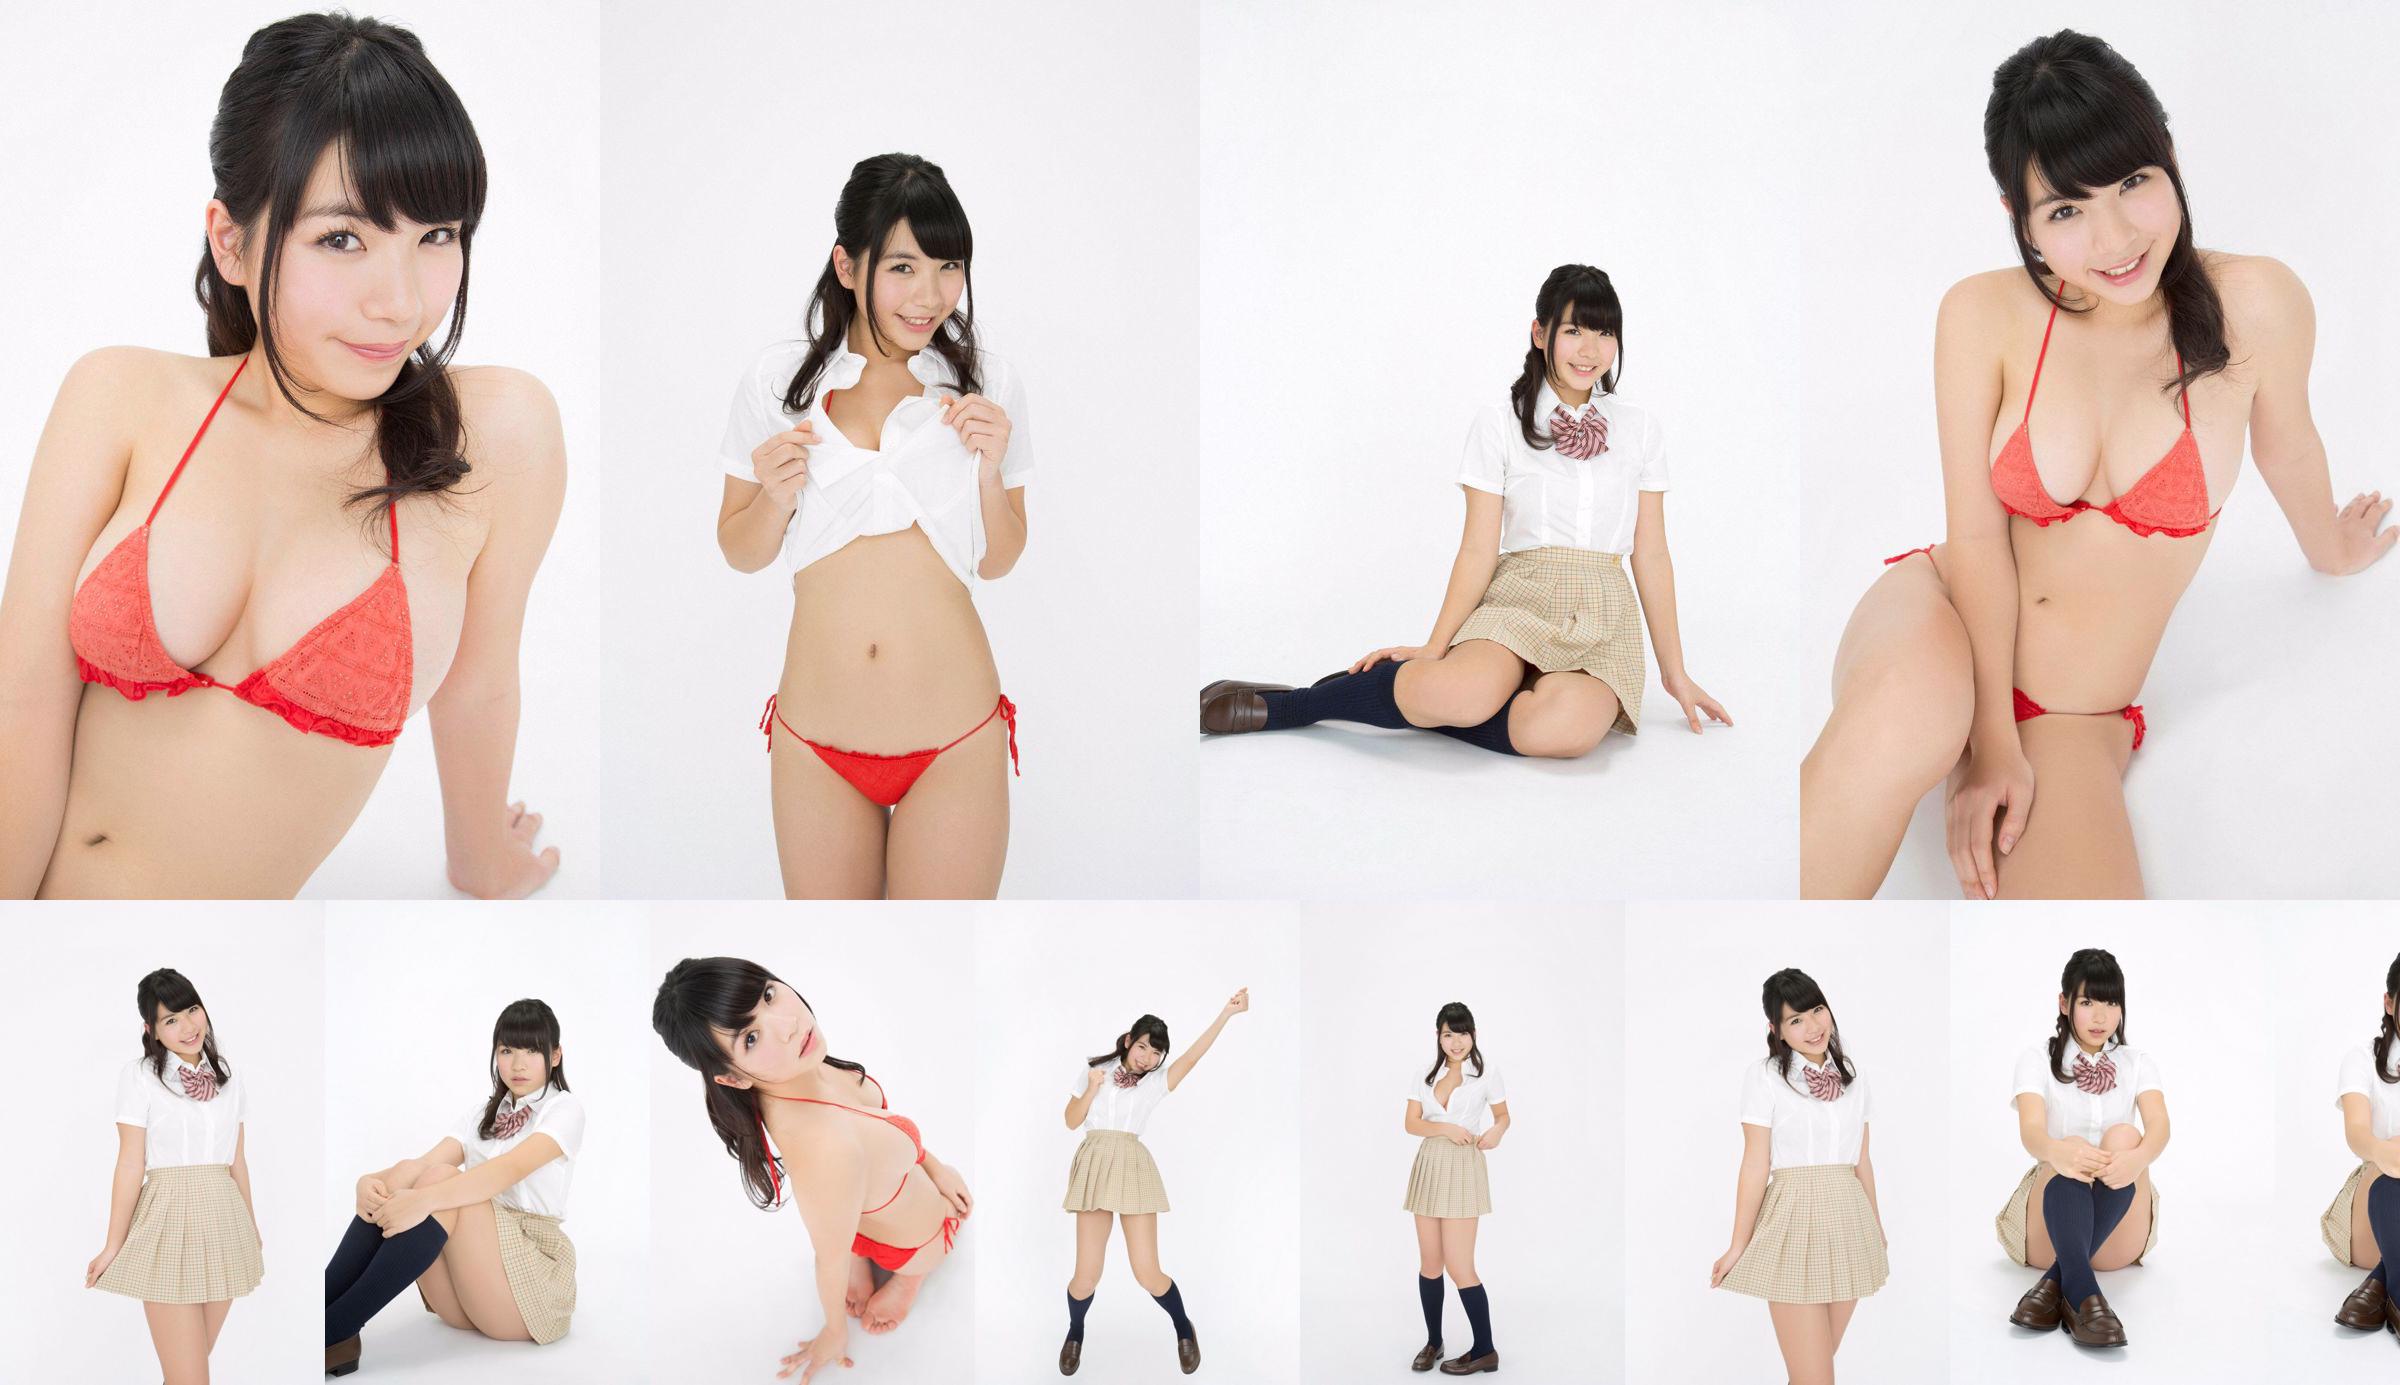 Jun Serizawa / Jun Serizawa "Một nữ sinh trung học năng động, lùn nhất Nhật Bản グ ラ ド ル nhập học! No.b60c5d Trang 23